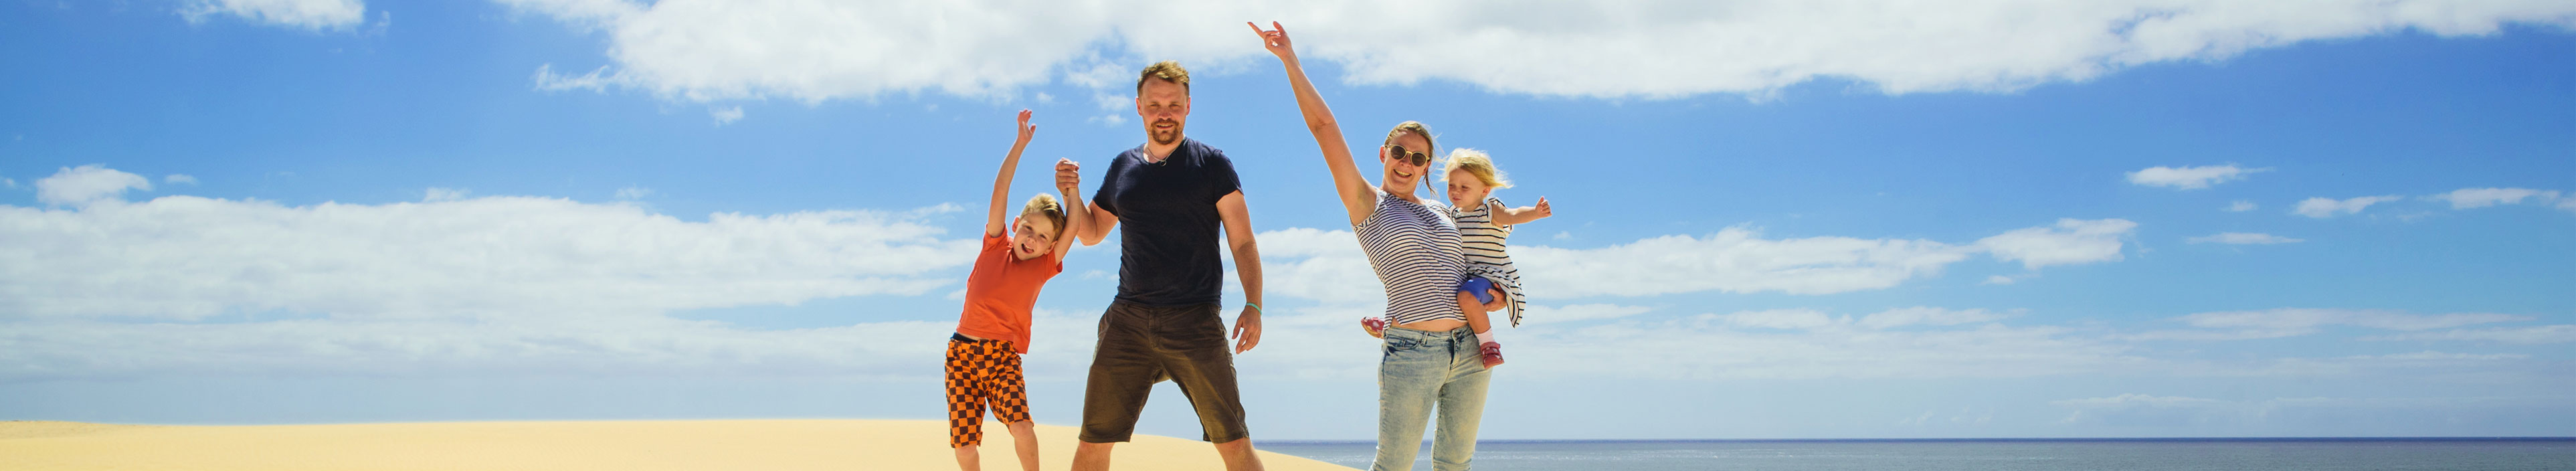 Eine glückliche junge Familie auf Fuerteventura.